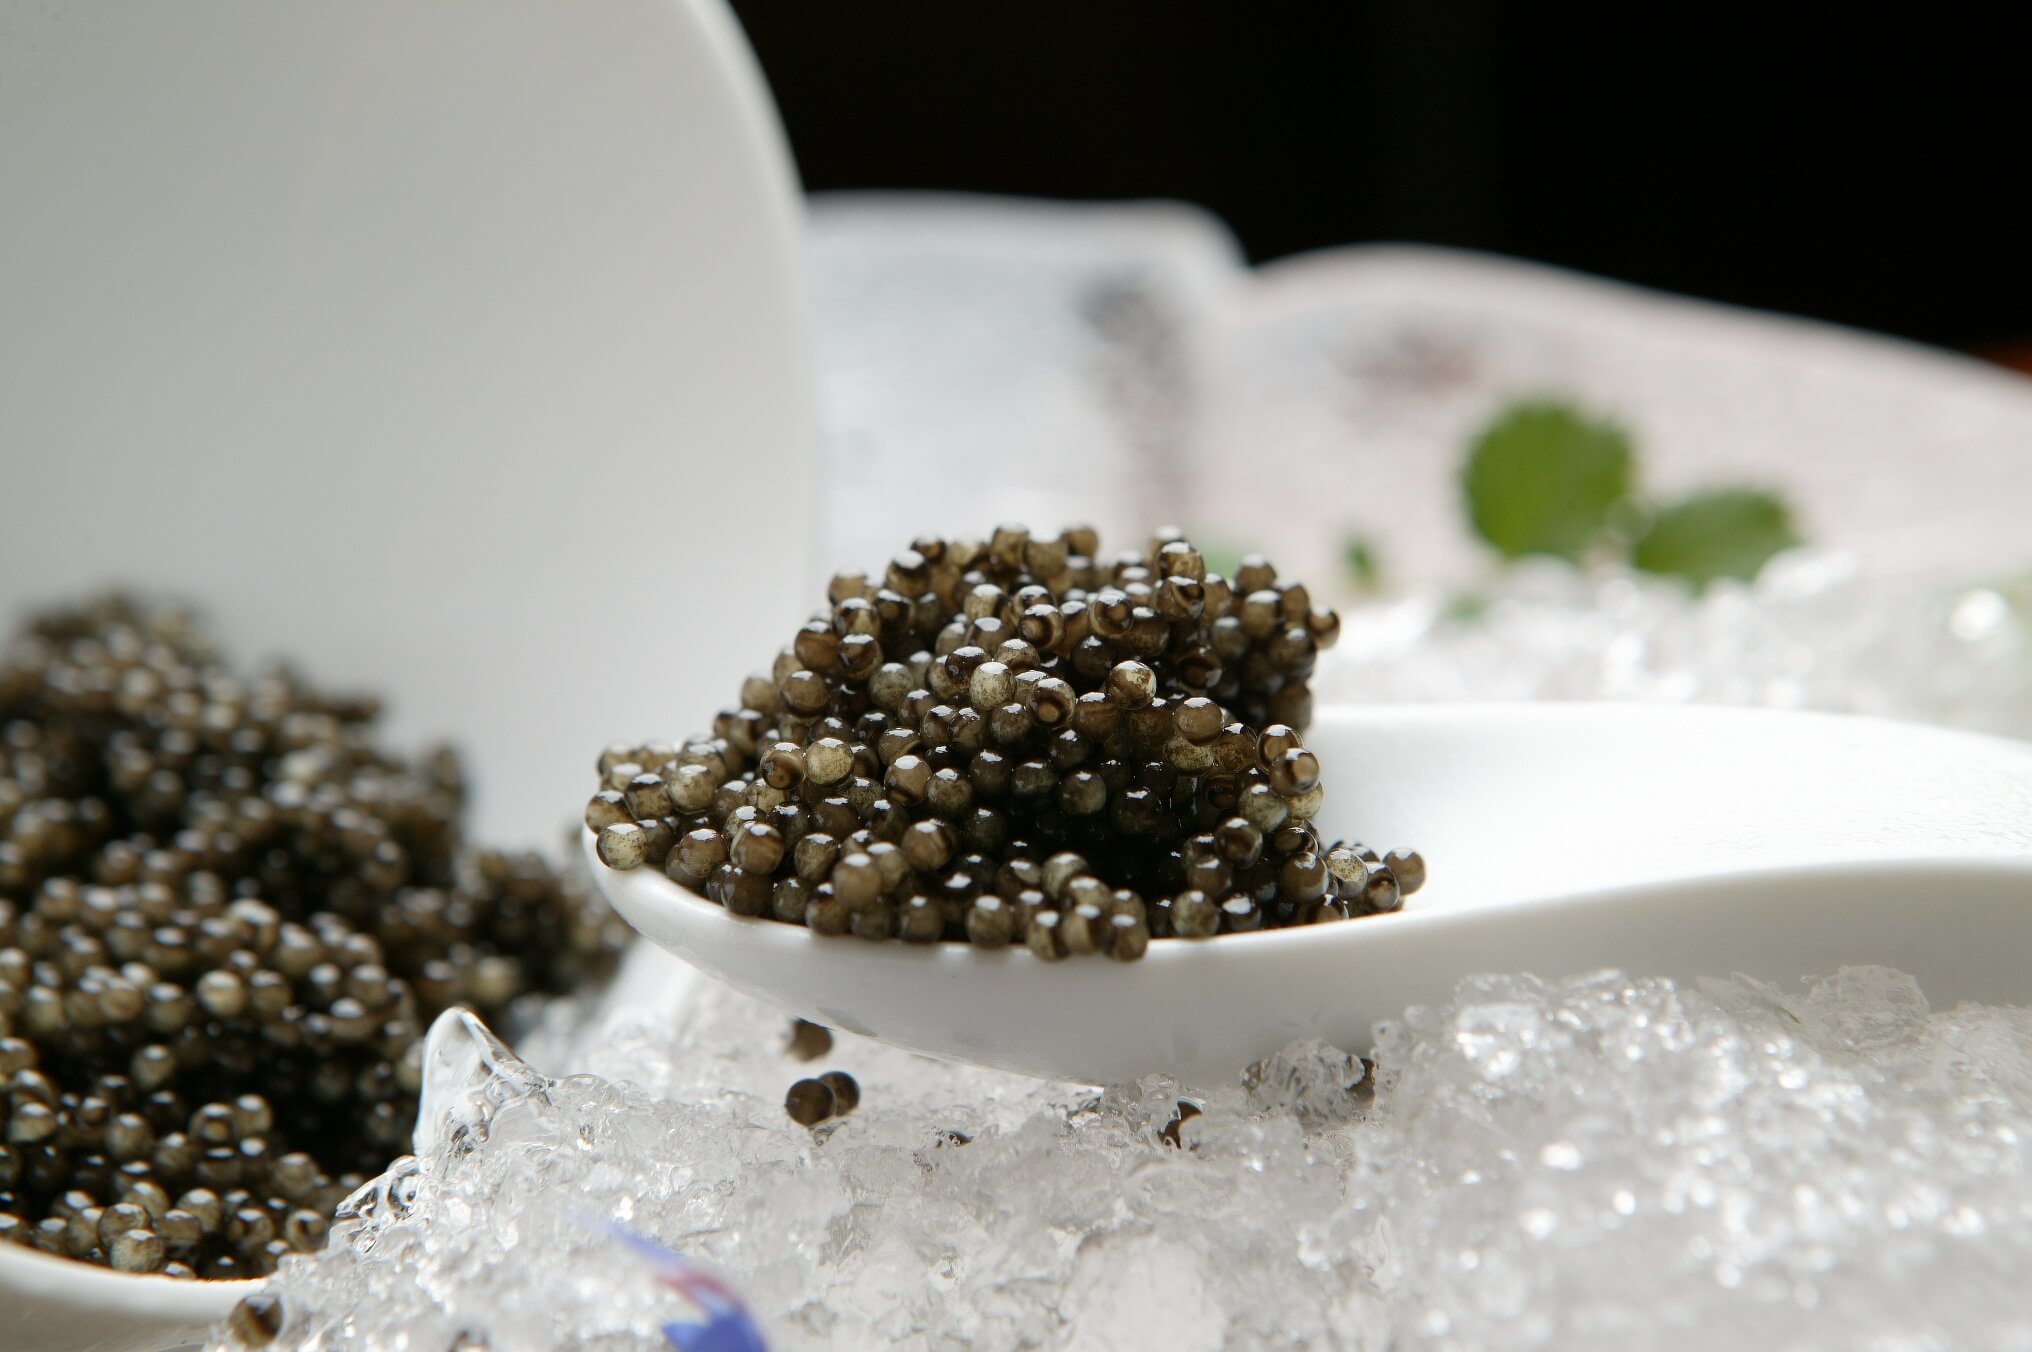 Caspian Monarque Caviar